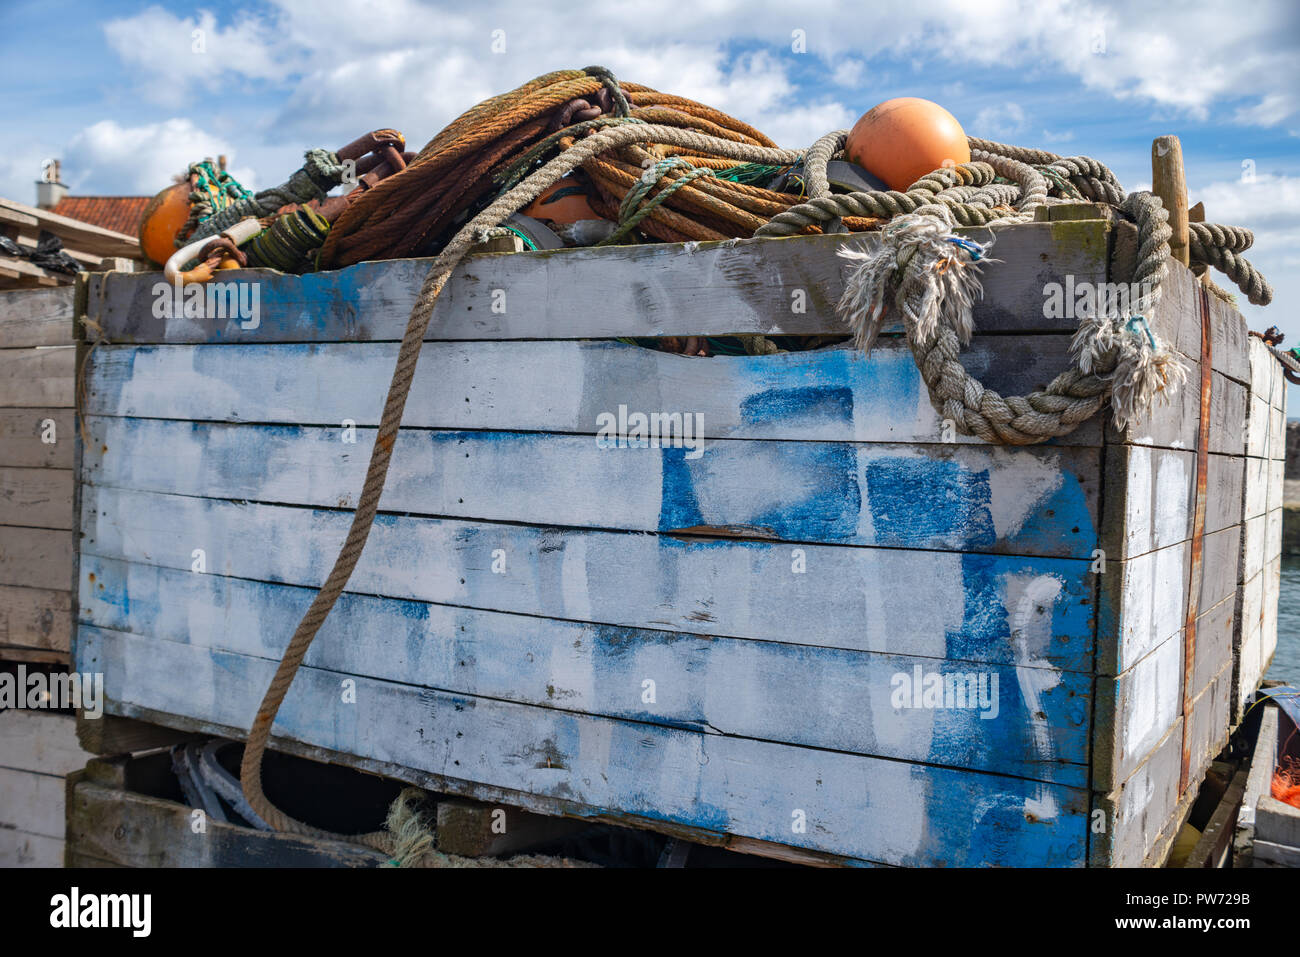 Le séchage des filets et engins de pêche au port historique de Pittenweem, Fife, Scotland, United Kingdom Banque D'Images